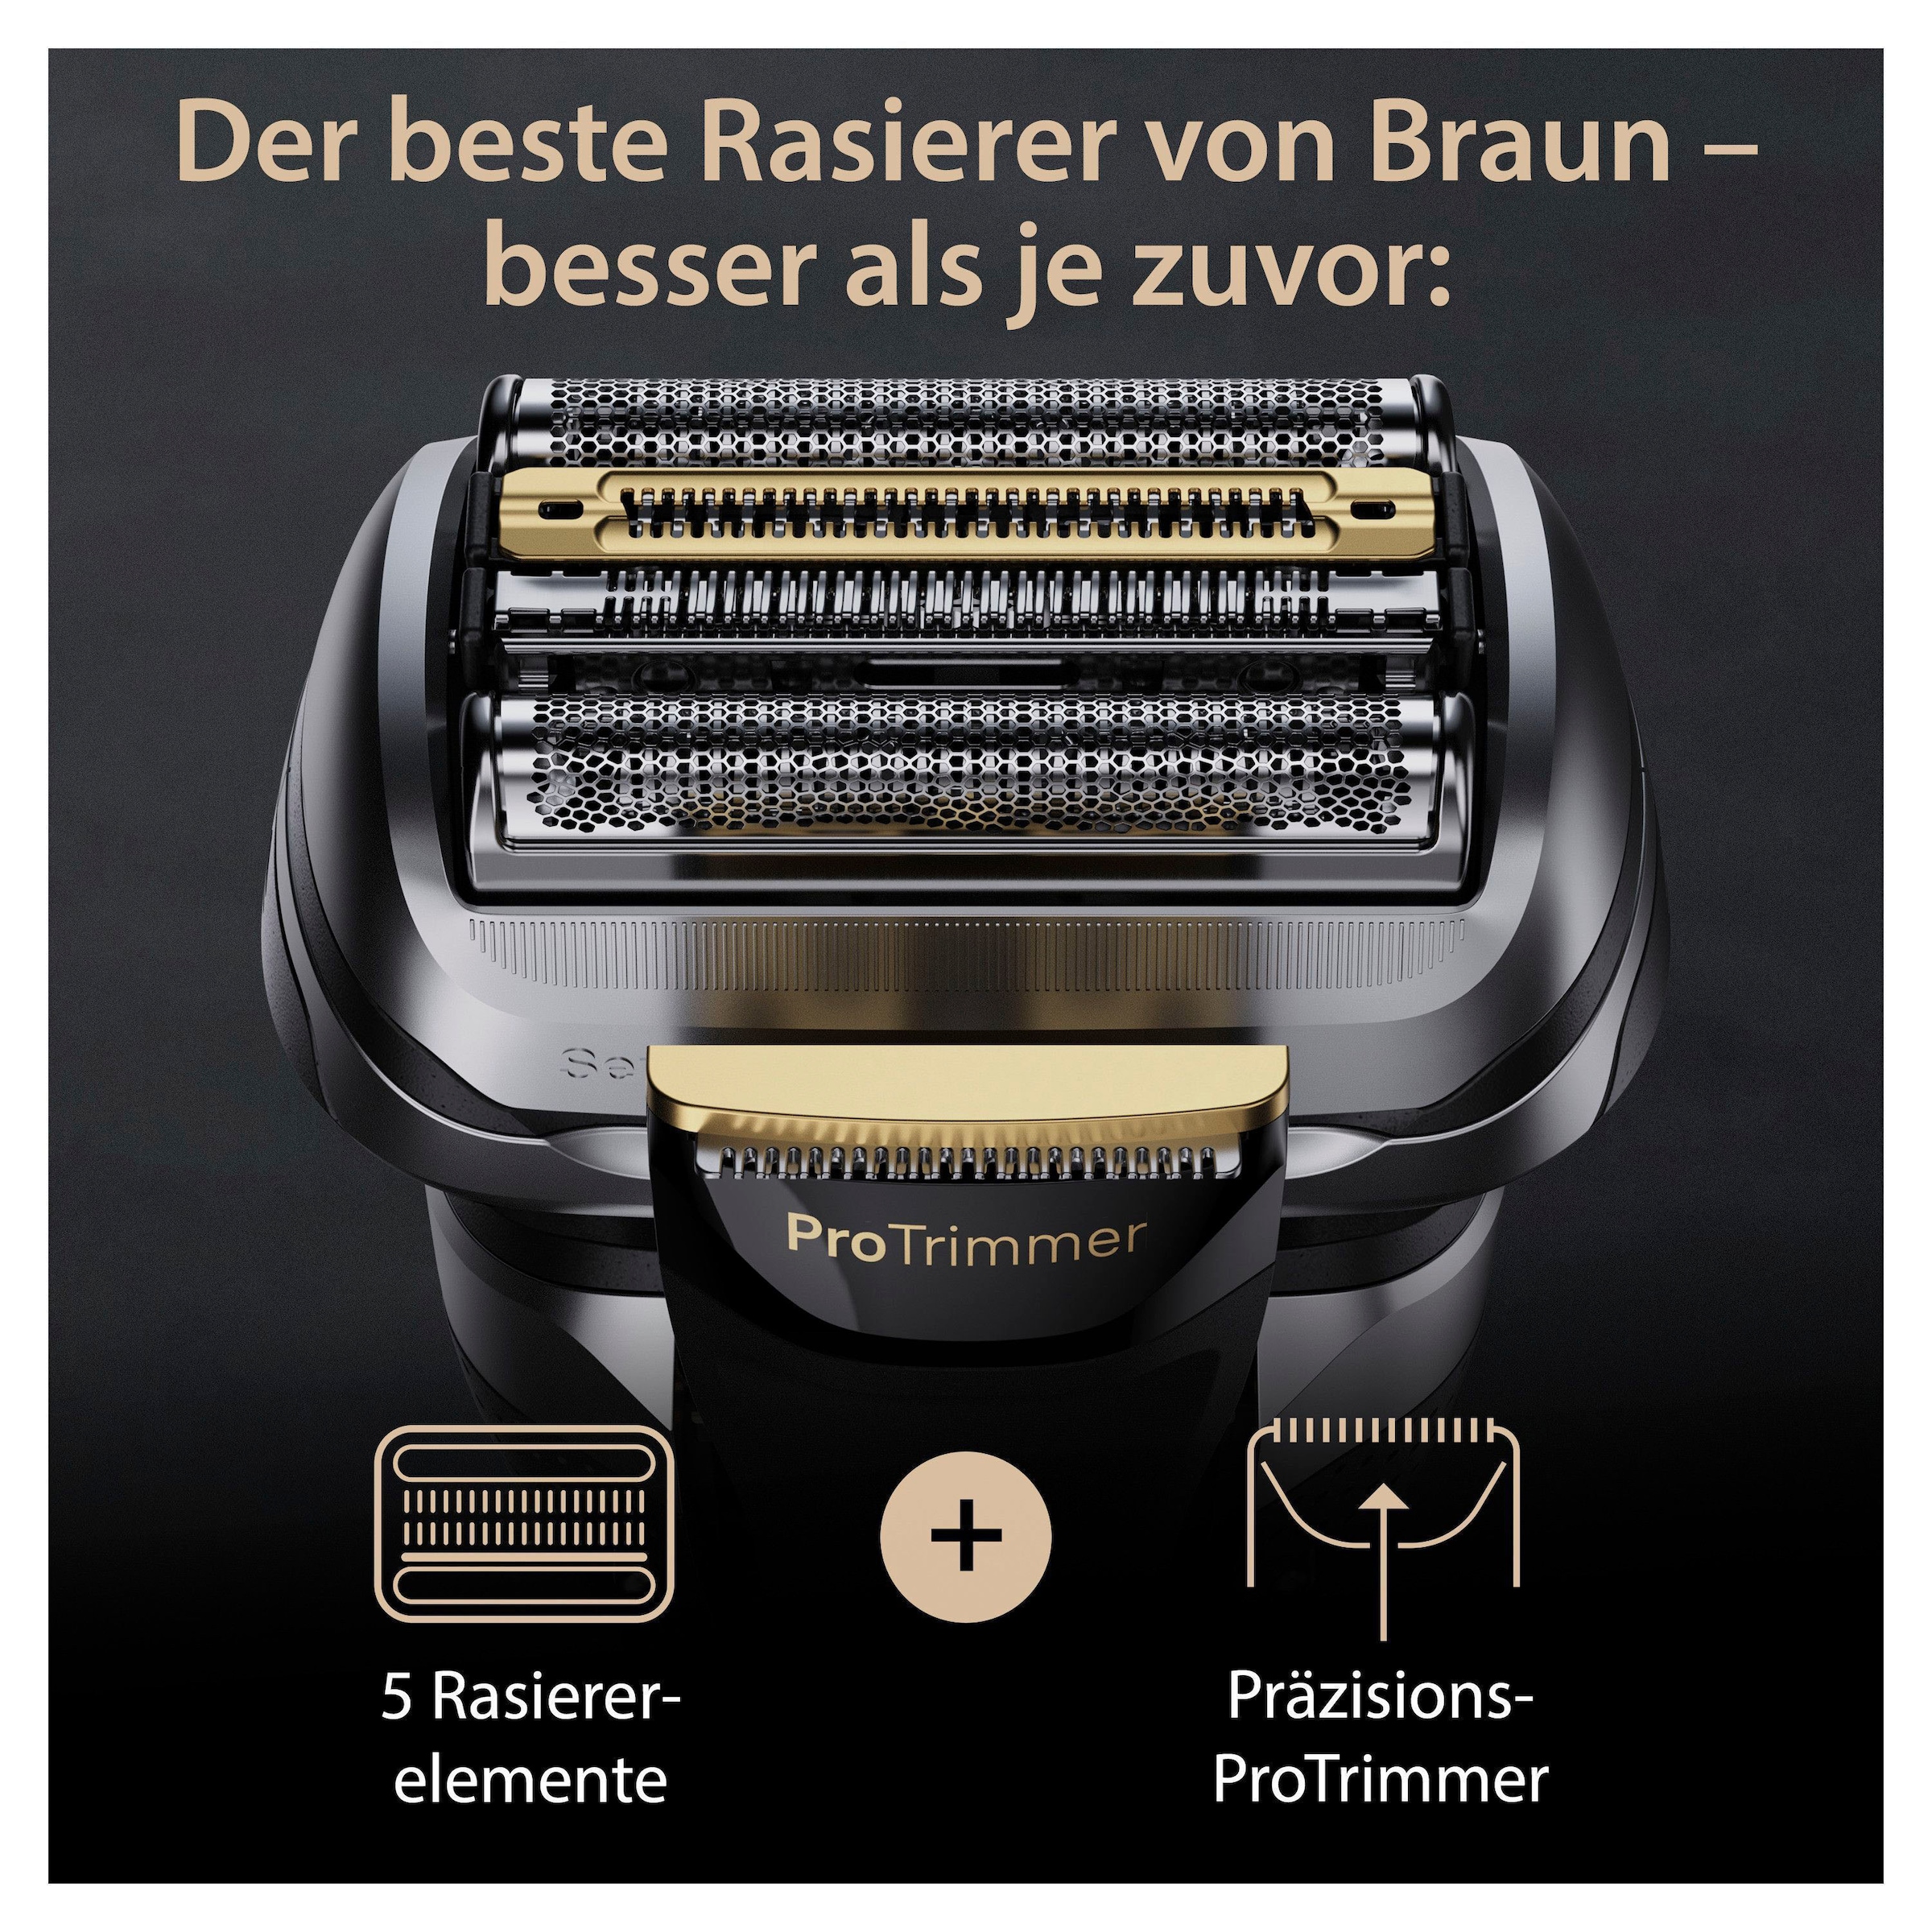 Braun Elektrorasierer »Series 9 | Precision Pro+ günstig kaufen ProTrimmer 9527s«